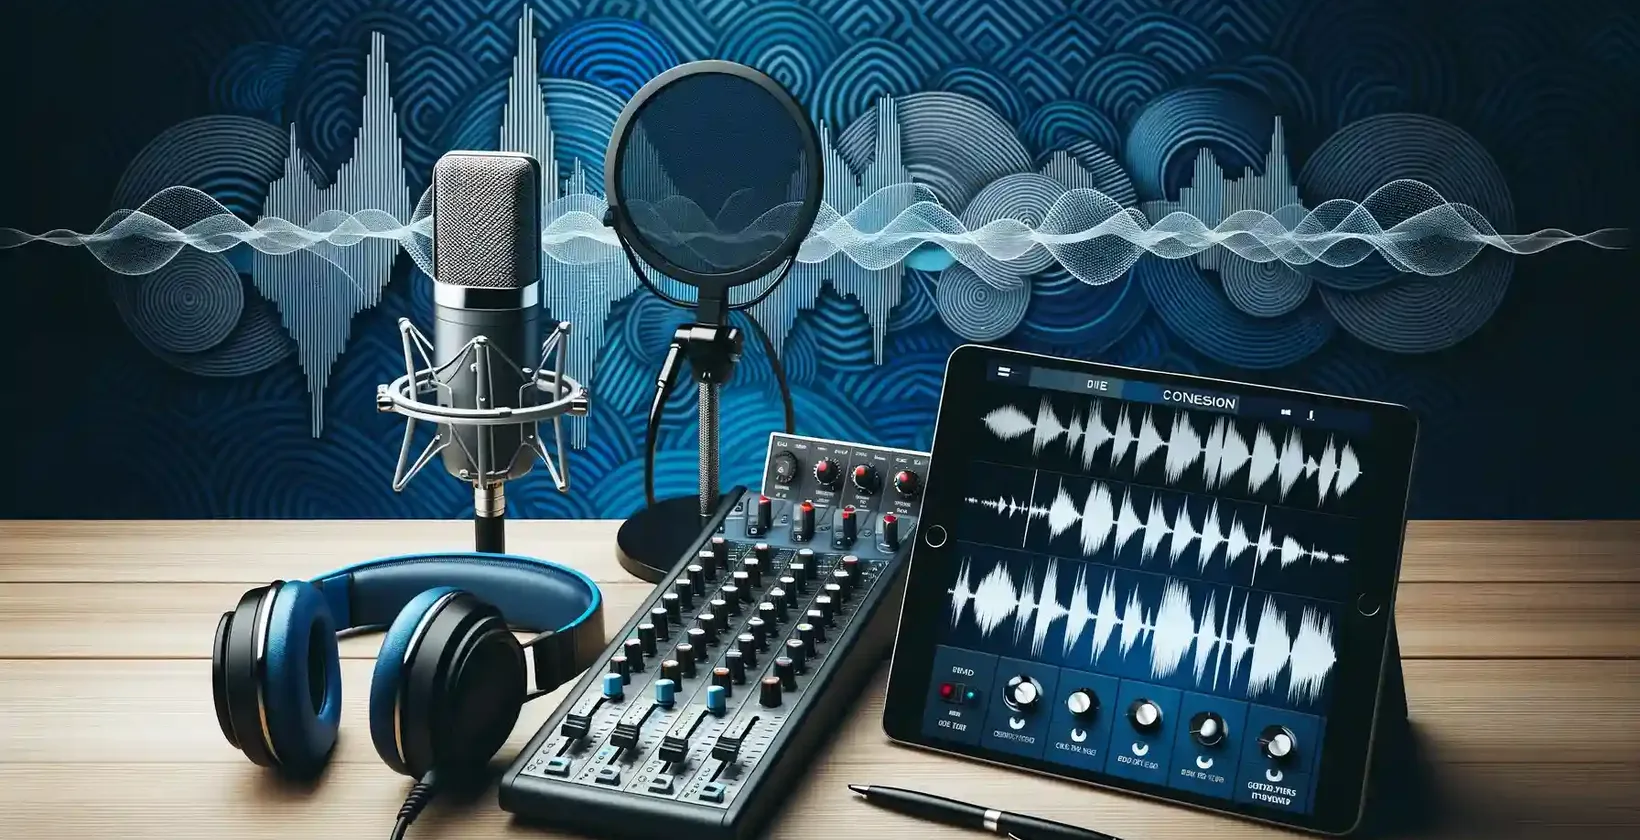 Profesionální nastavení pro přepis podcastů s mikrofonem a sluchátky zdůrazňujícími služby přepisu.